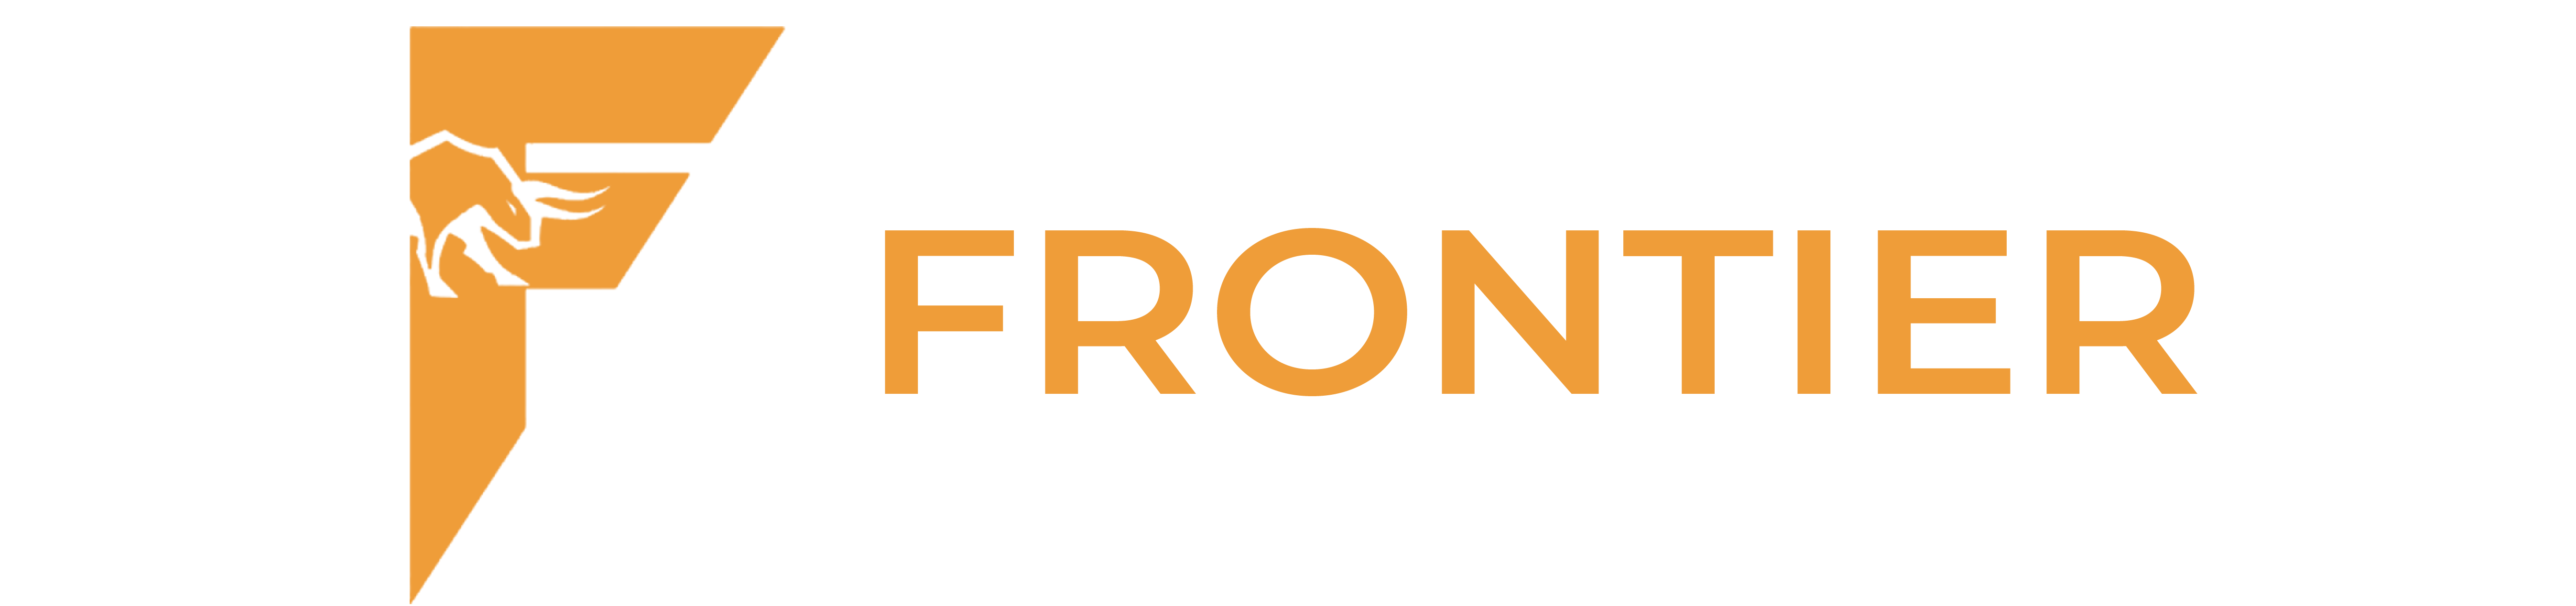 Funding Frontier